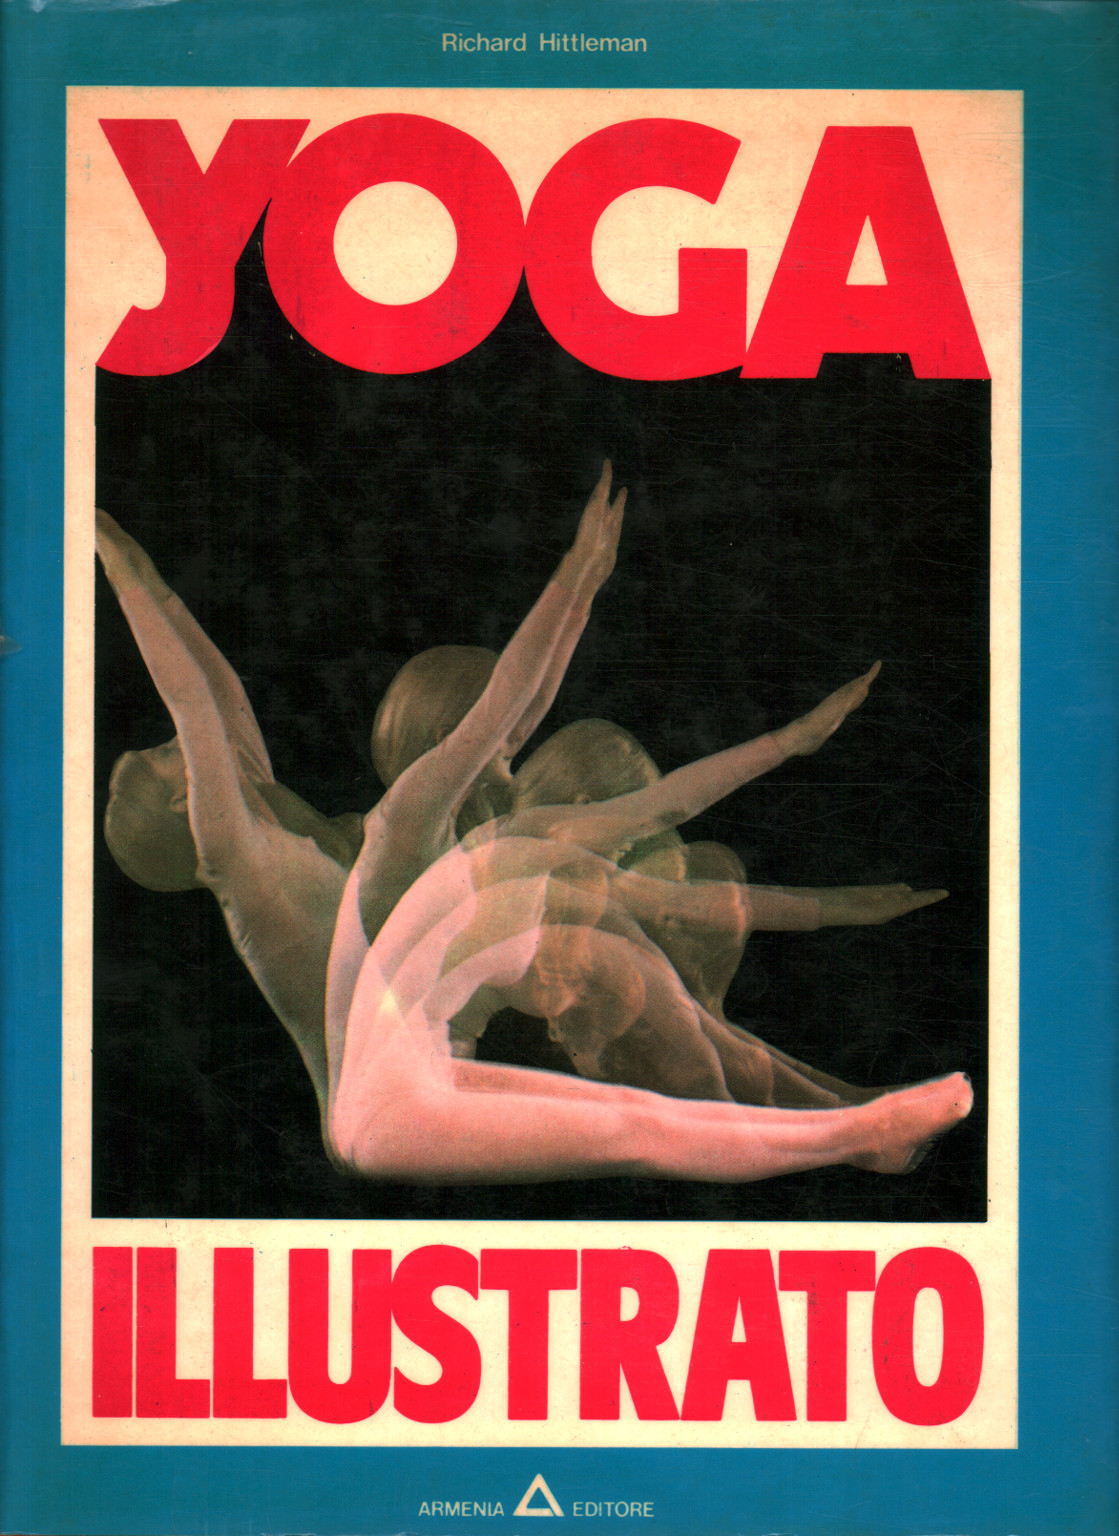 Yoga illustrato, Richard Hittleman